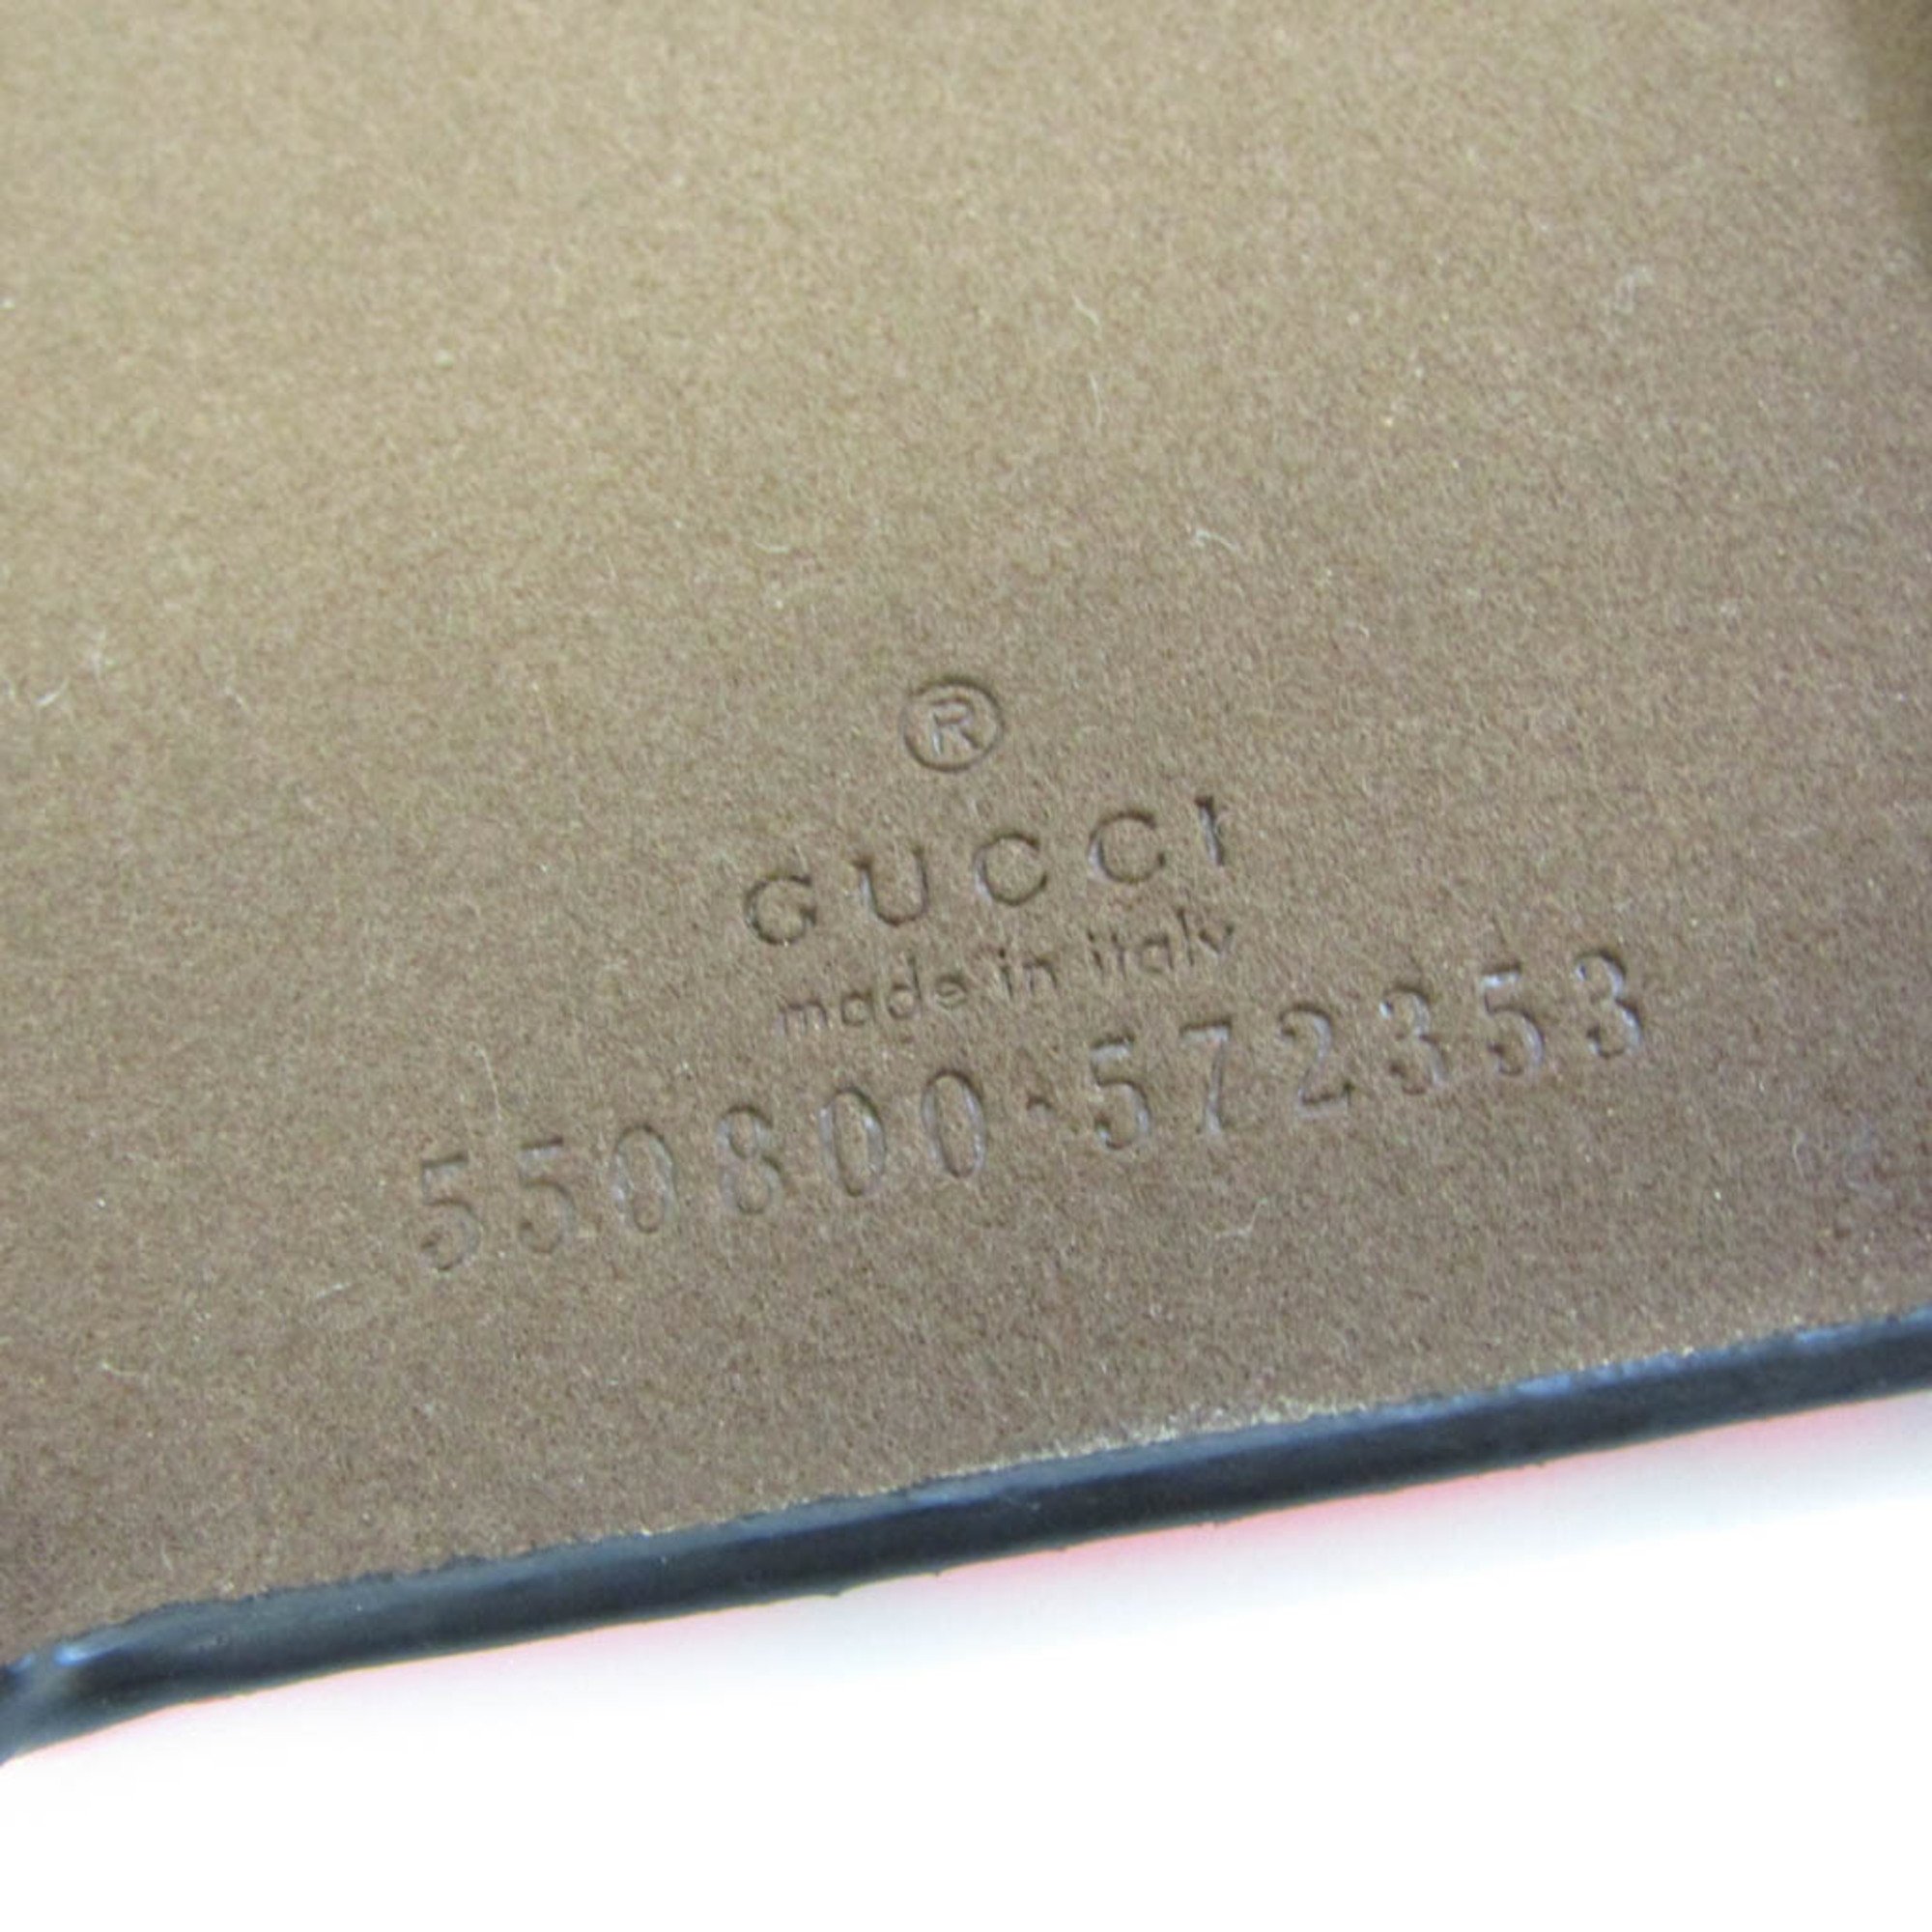 グッチ(Gucci) 550800 レザー バンパー iPhone X 対応 ピンク